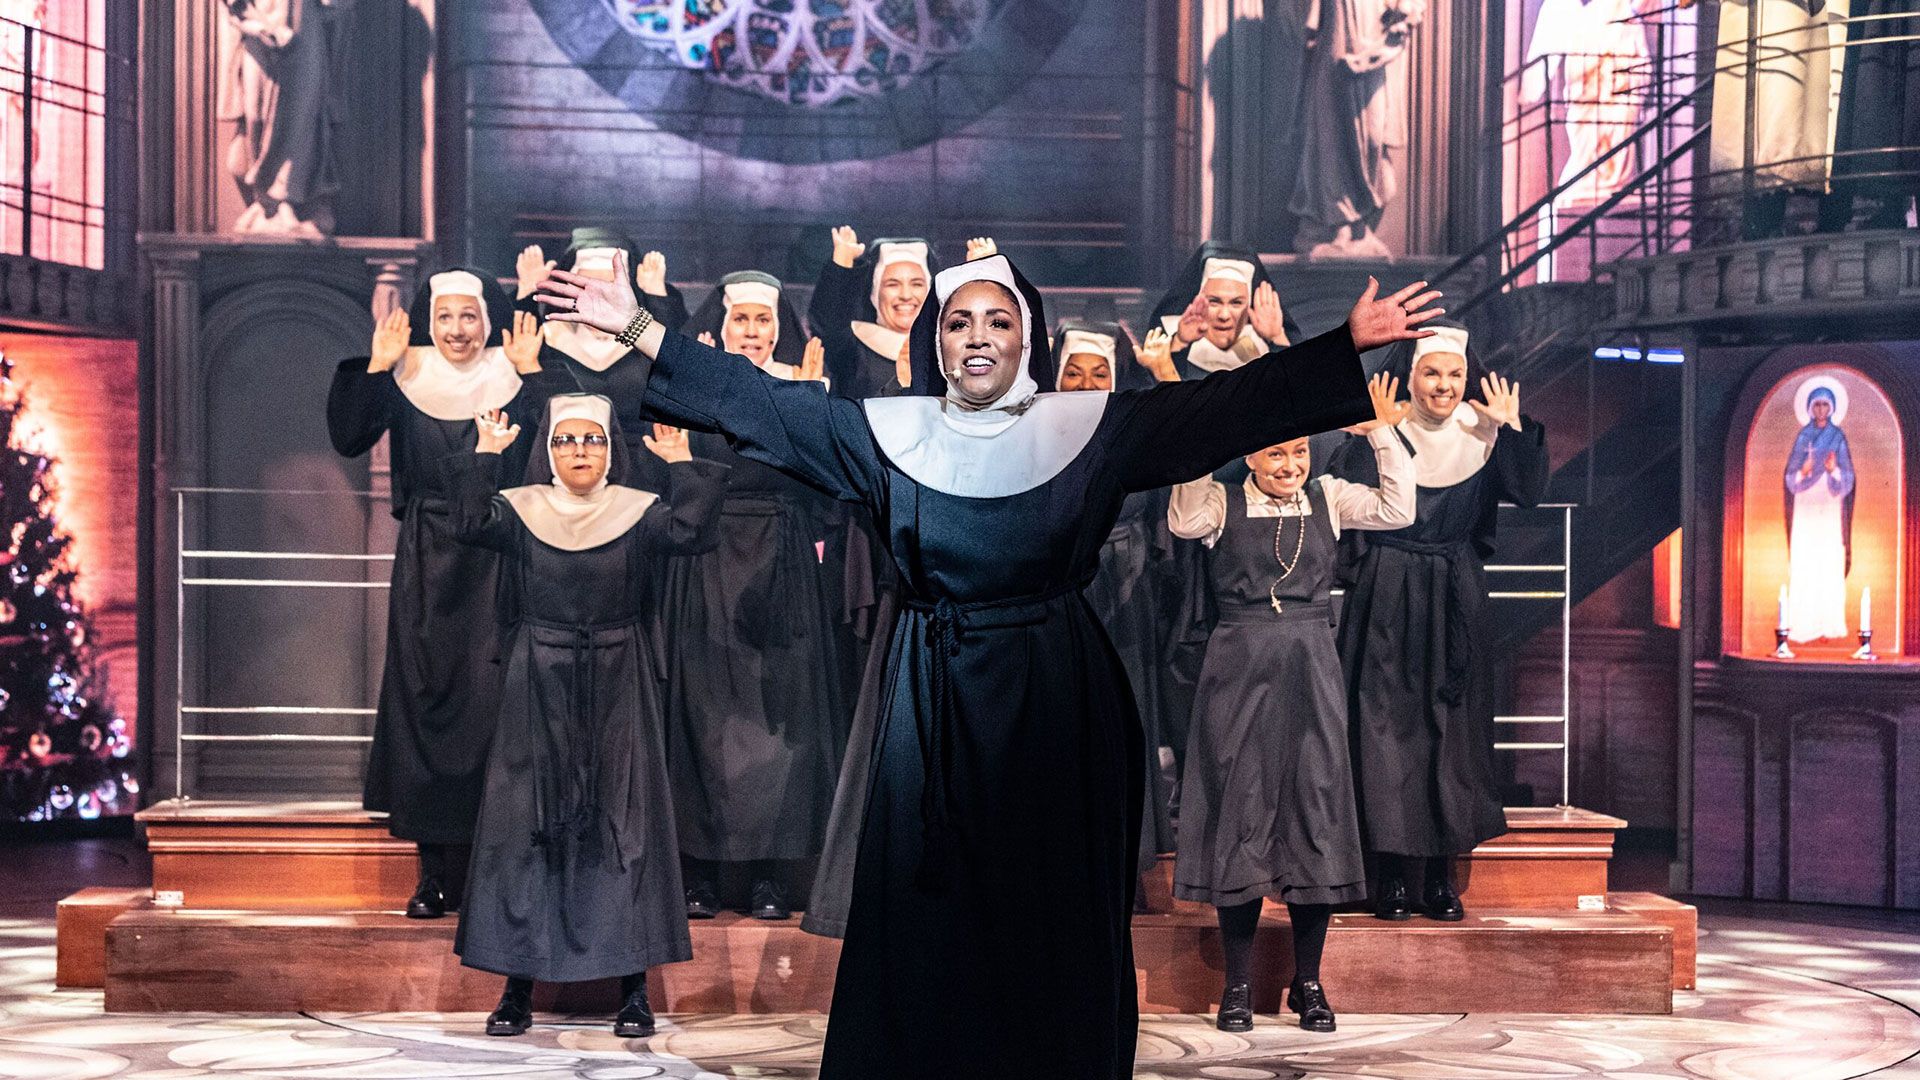 Forestillingsbilde fra Sister Act. Damer i nonne-kostyme danser på scenen.